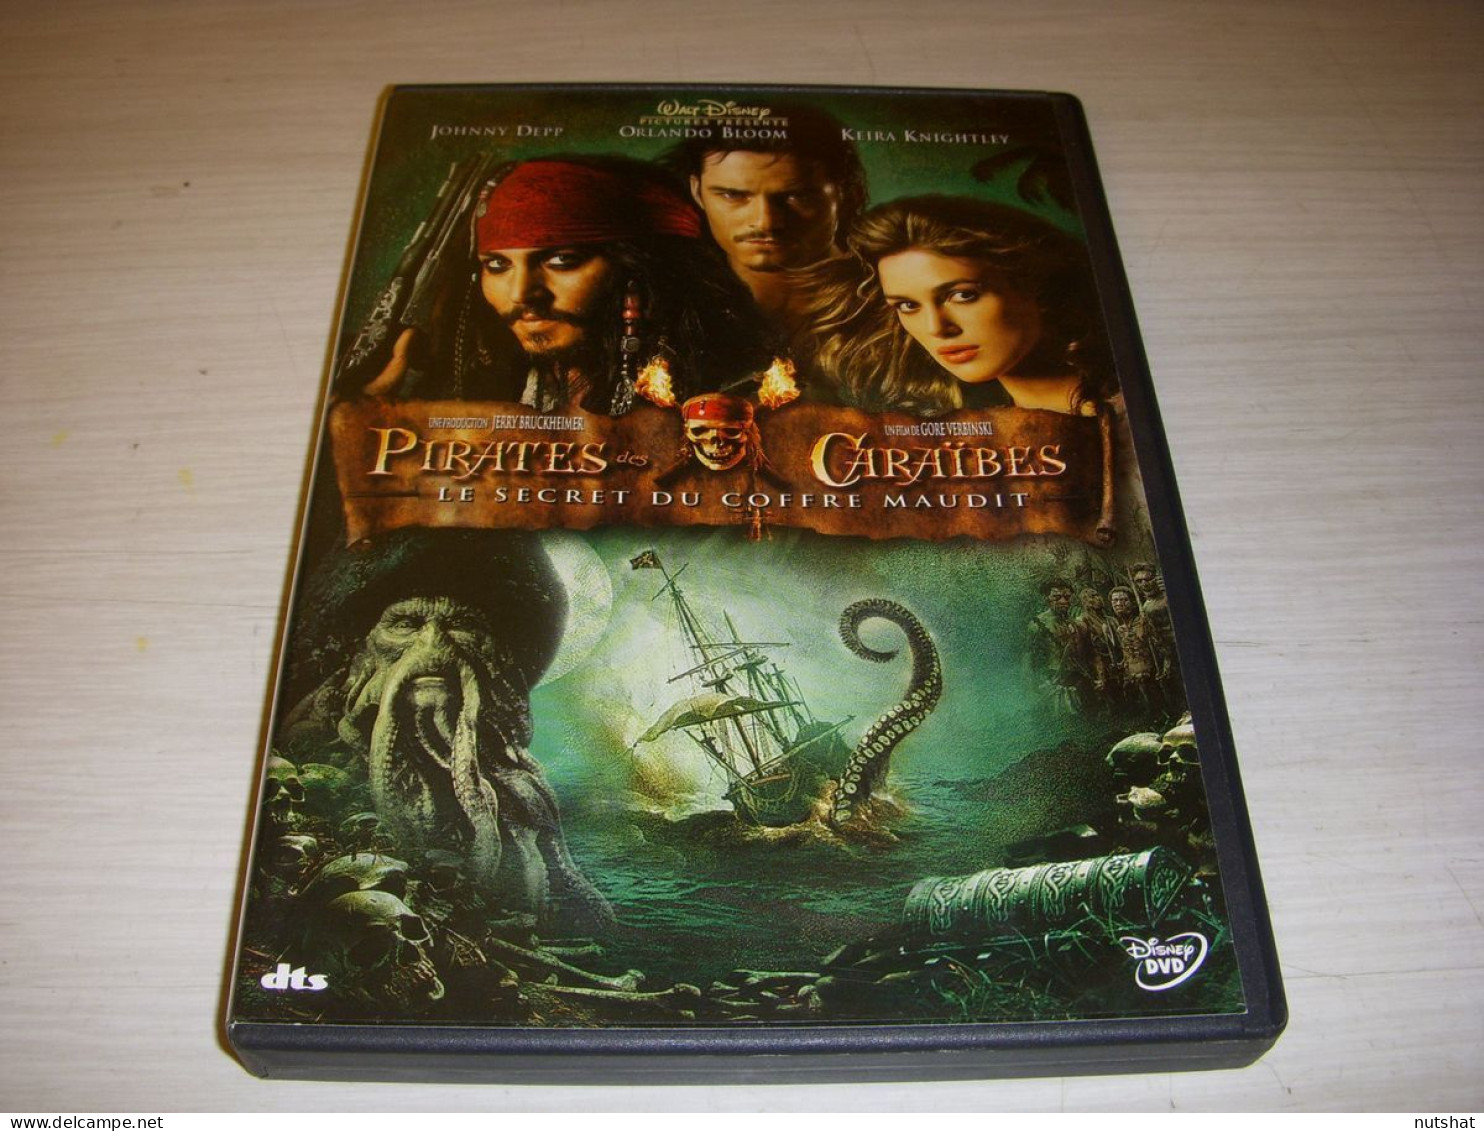 DVD CINEMA PIRATES Des CARAIBES Le SECRET Du COFFRE MAUDIT Johnny DEPP - Action, Adventure